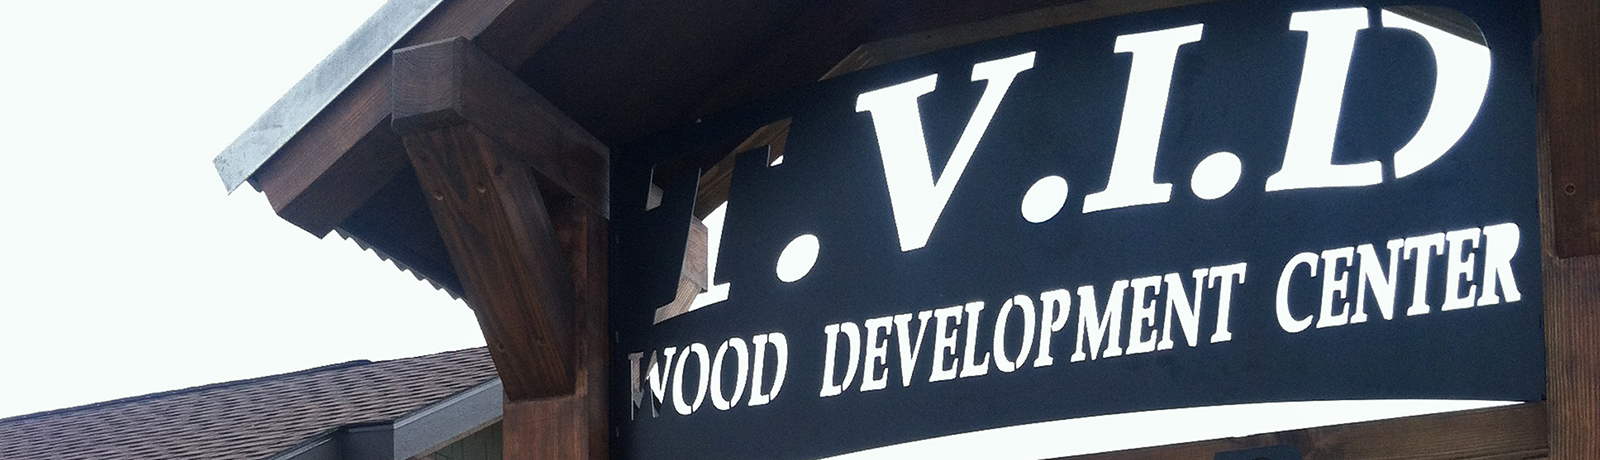 Wood Development Center